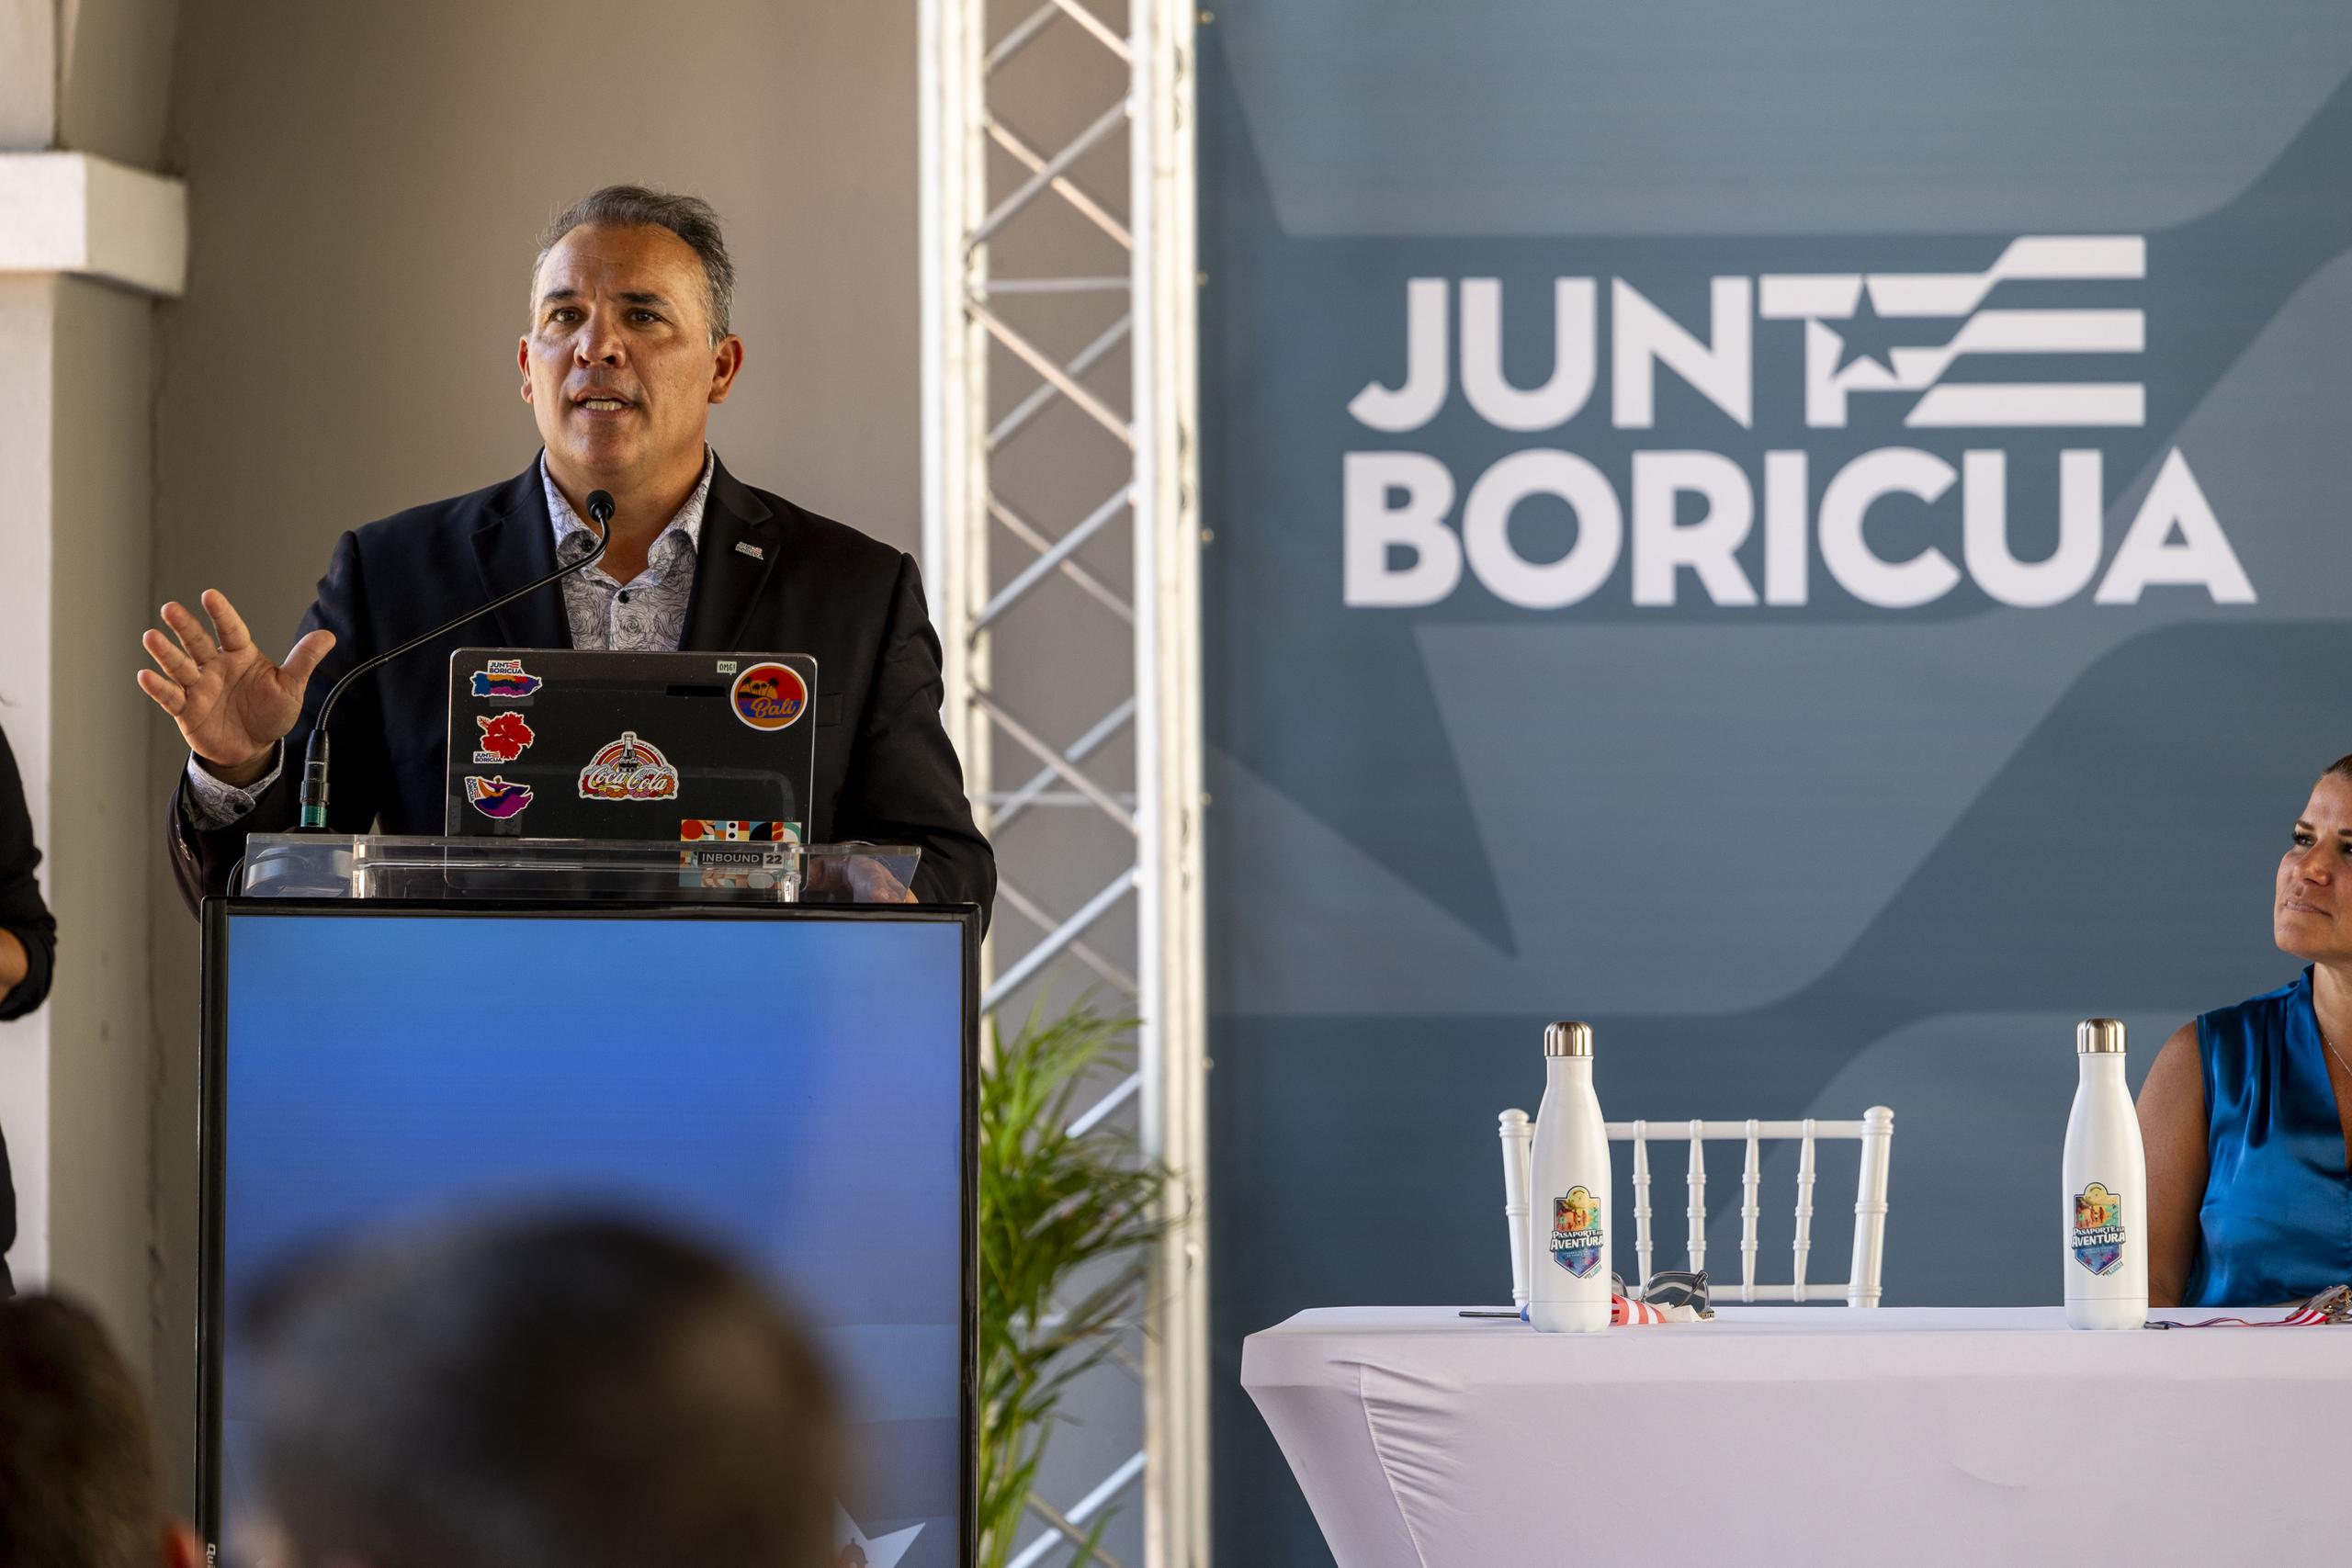 Pedro Zorrilla, Principal Oficial Ejecutivo de GFR Media, explicó que Junte Boricua tiene como fin atraer a más de 50,000 puertorriqueños y amigos del extranjero a disfrutar de los encantos del país entre el 1 de mayo hasta el 31 de agosto.